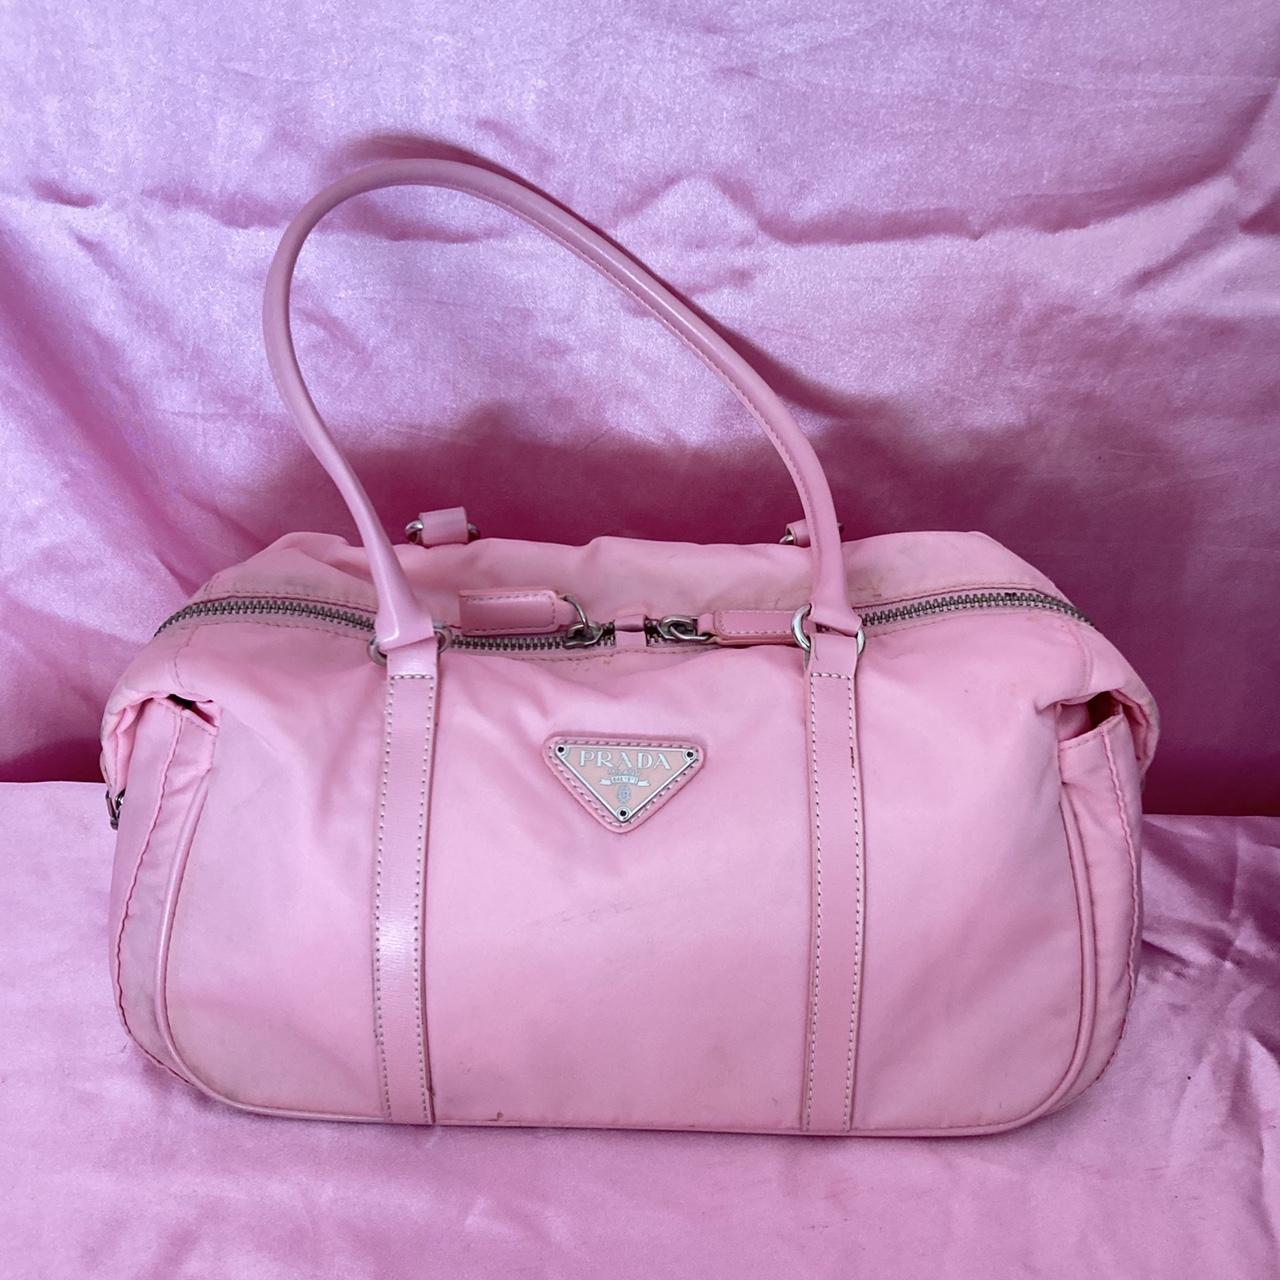 Prada Women's Bags  Pink 